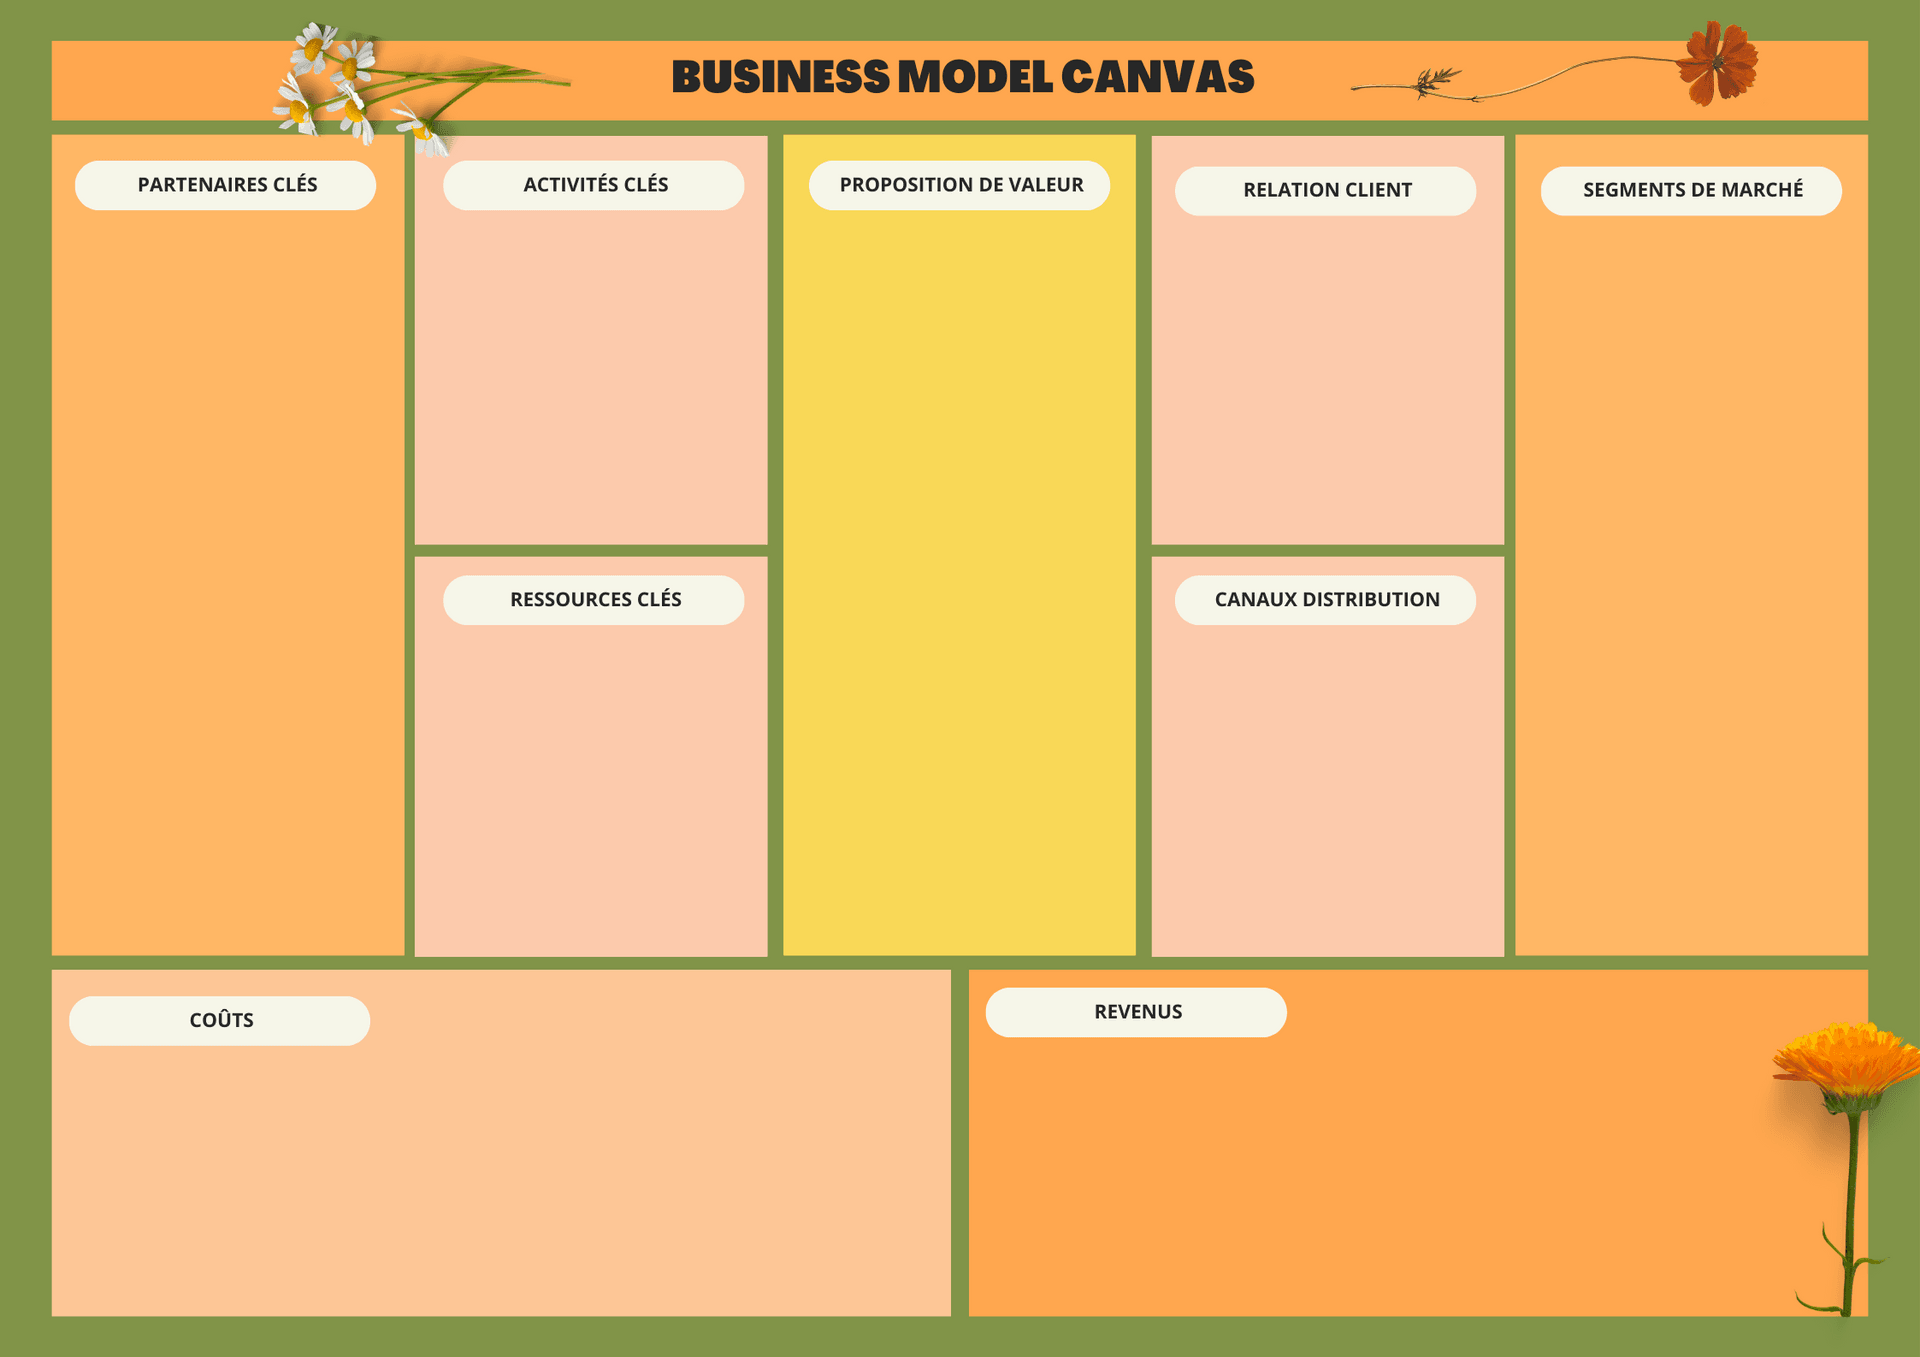 Image du Business Model Canvas, outil clé pour révolutionner les modèles d'affaires. Représentation d'une séance hautement personnalisée pour transformer et positionner votre modèle d'affaires selon vos ambitions, business model canvas template.